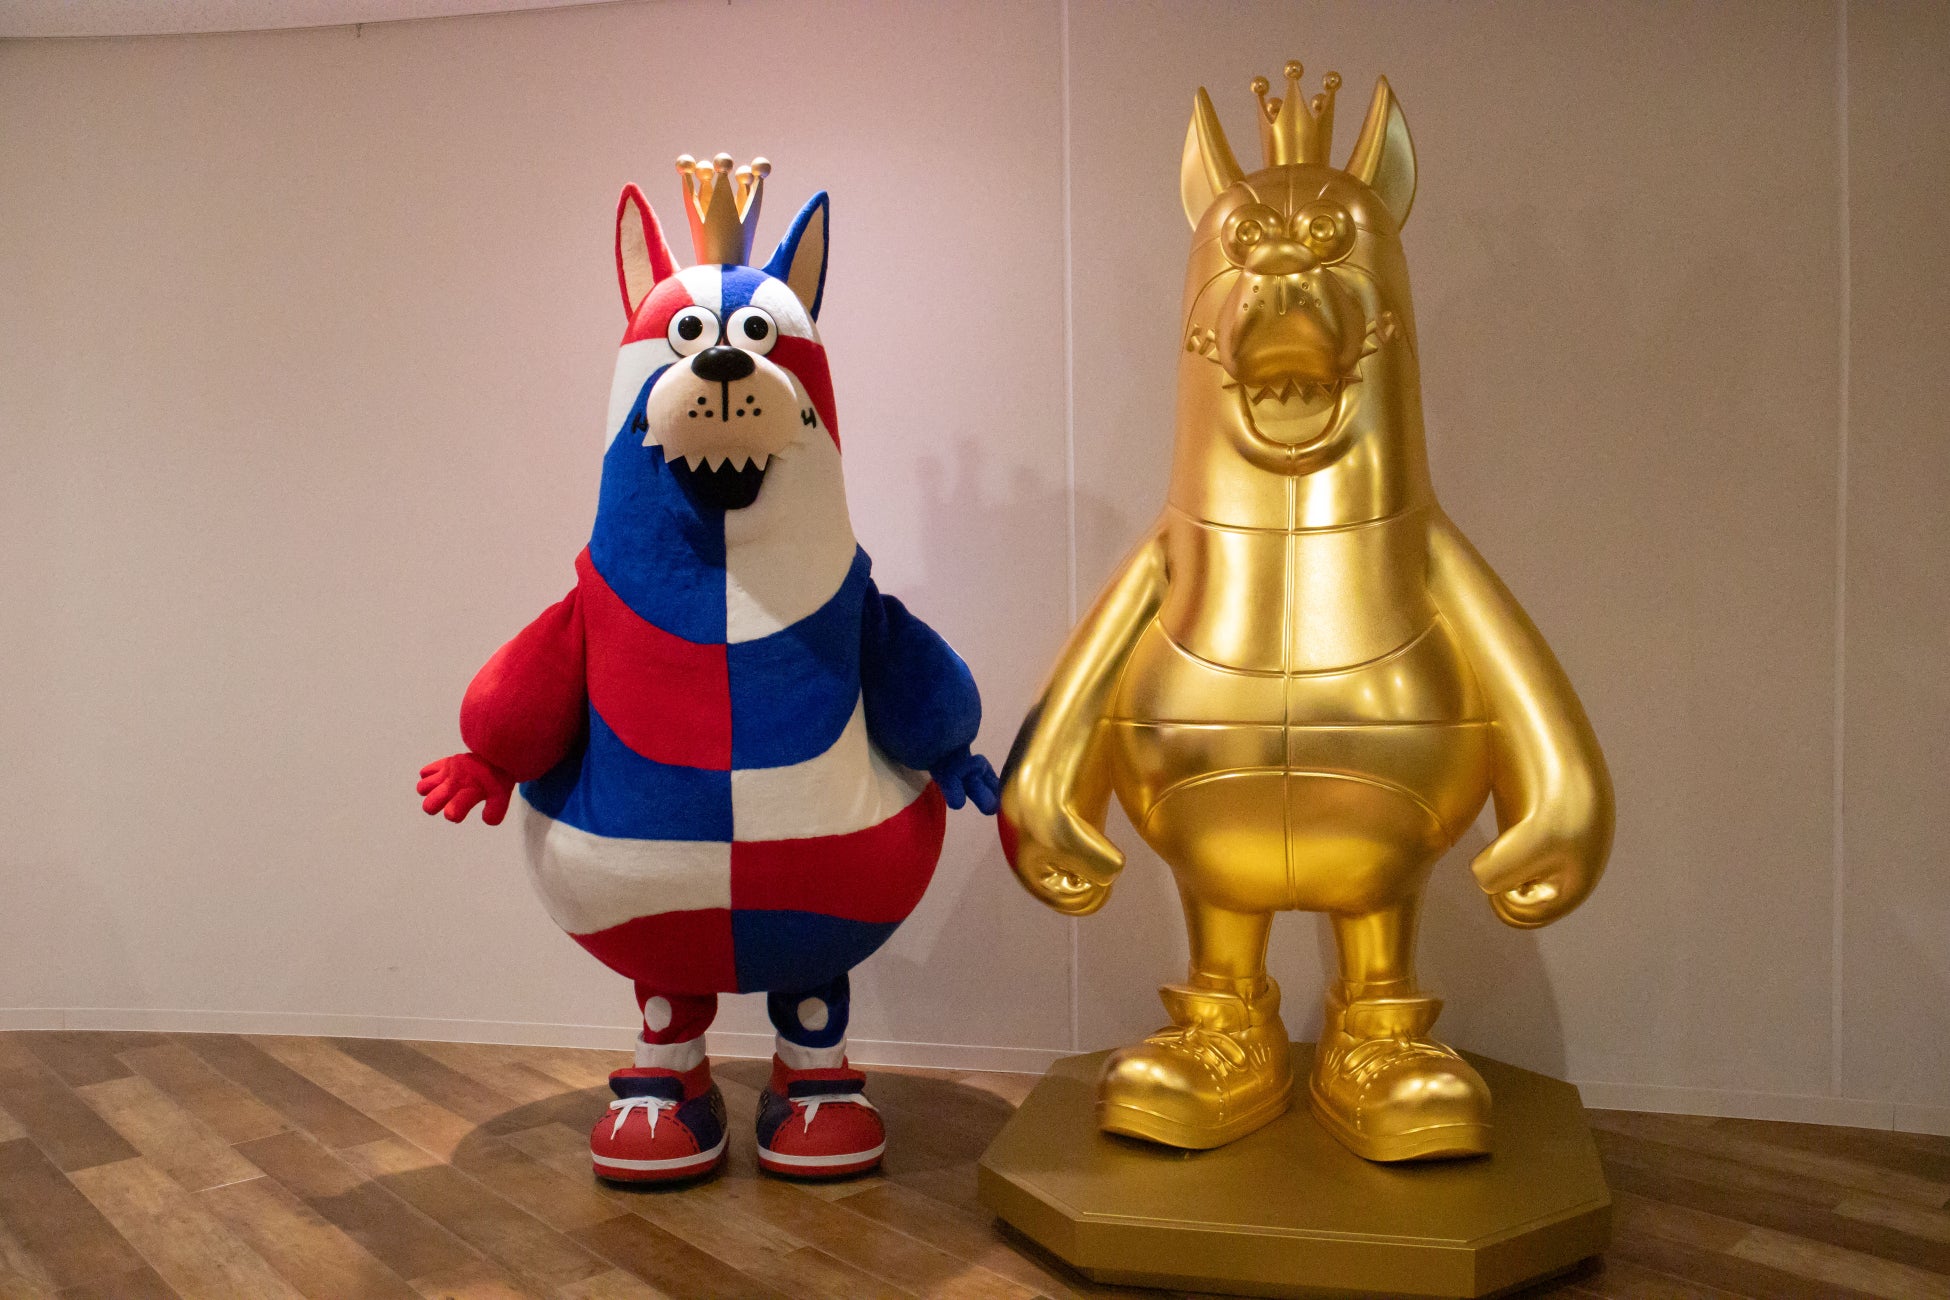 SGC×キングスゴーディー等身大金箔像と純金ゴーディーを沖縄アリーナにて展示します